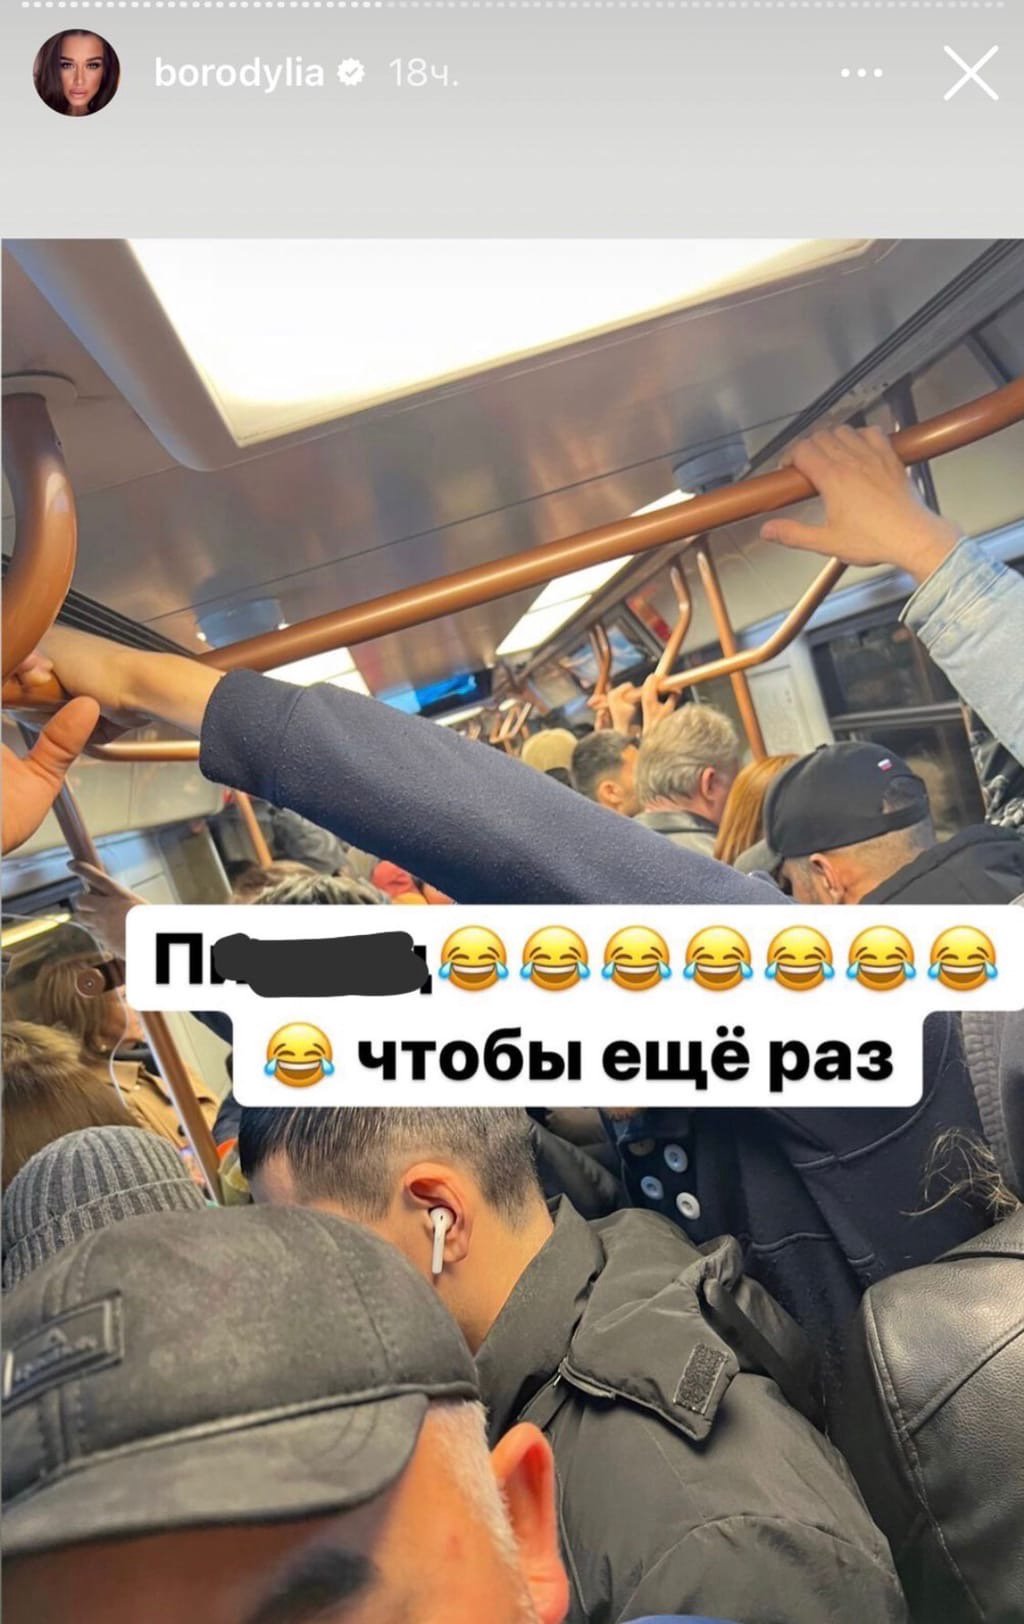 Ксения Бородина поделилась впечатлениями от поездки в метро